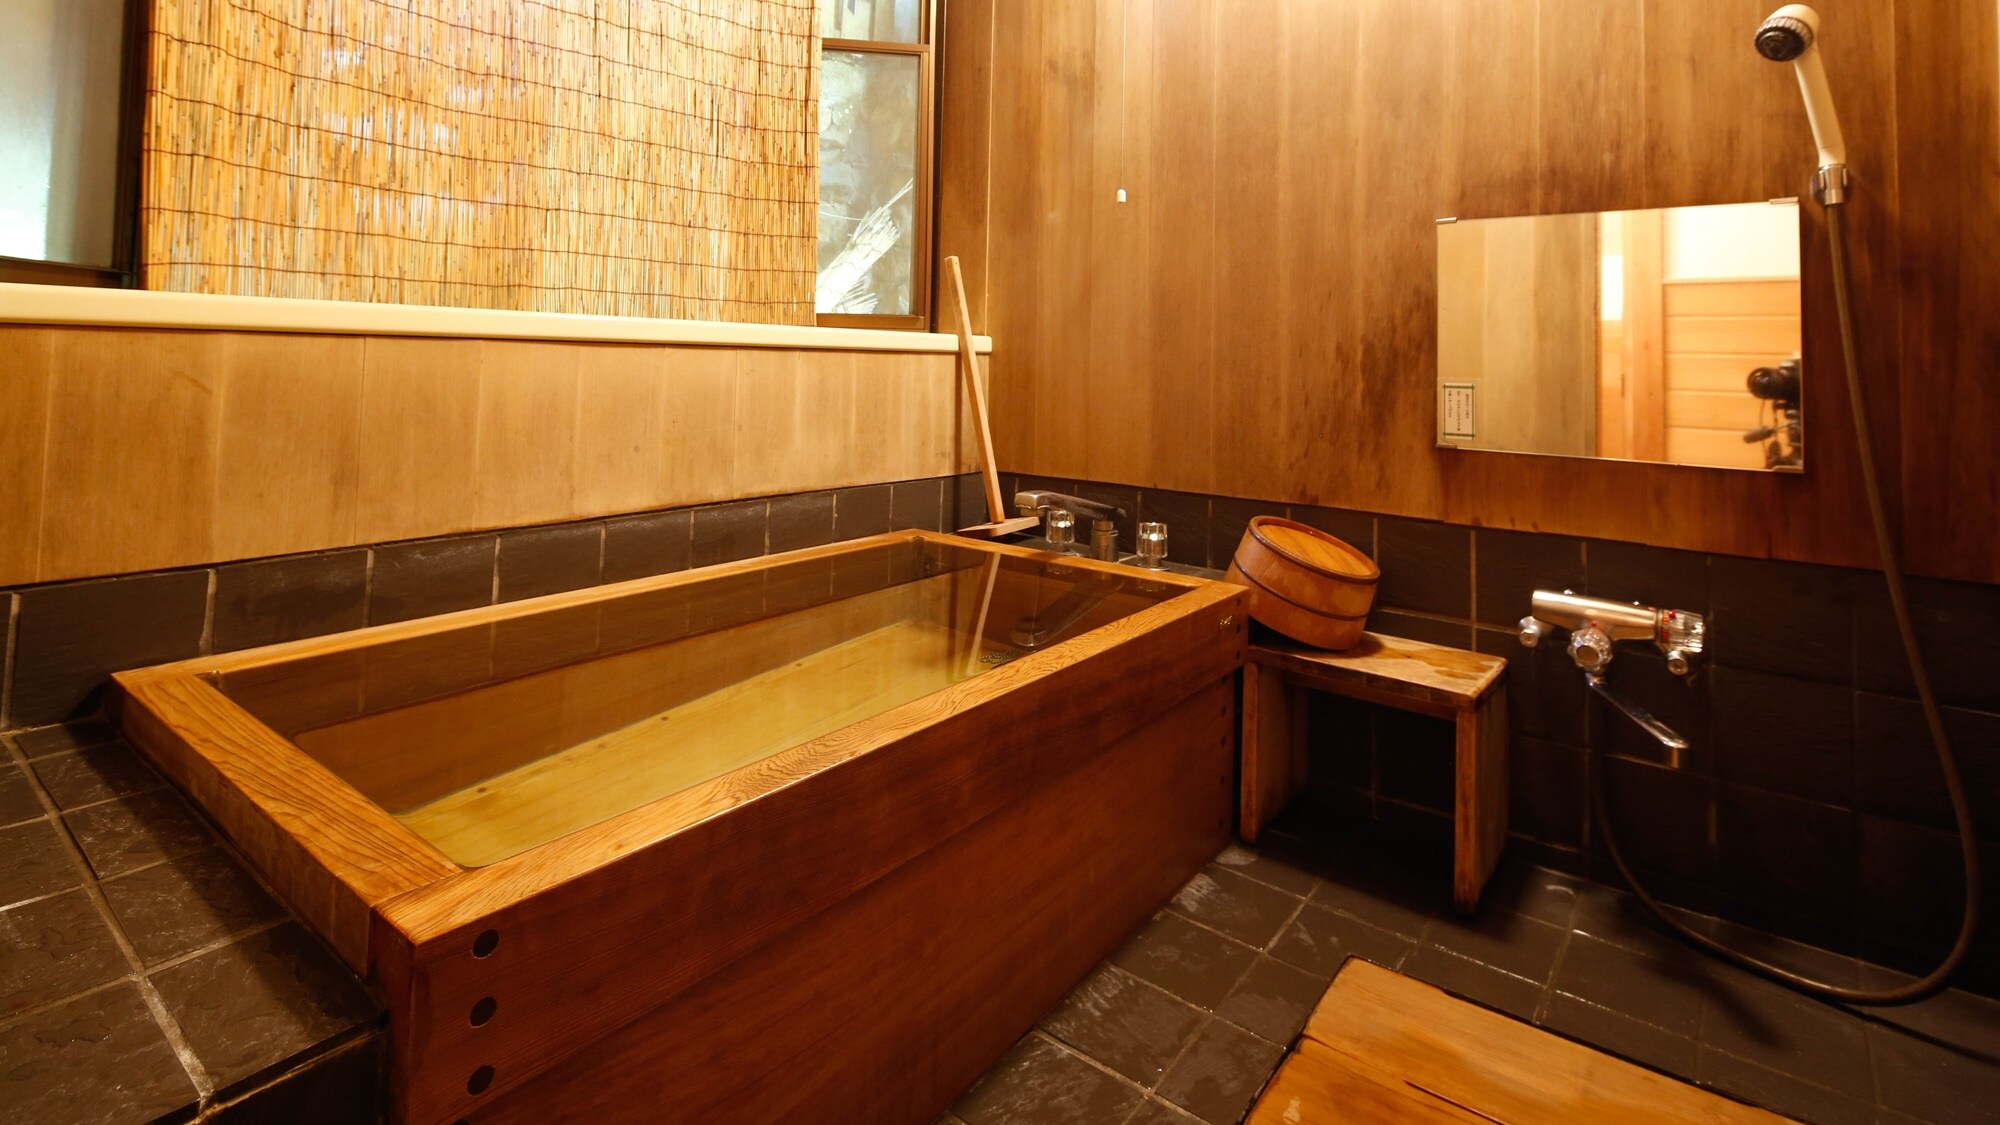 ห้องพักสไตล์ญี่ปุ่น ขอบกว้าง เสื่อทาทามิ 10 ผืน พร้อมอ่างอาบน้ำไซเปรส